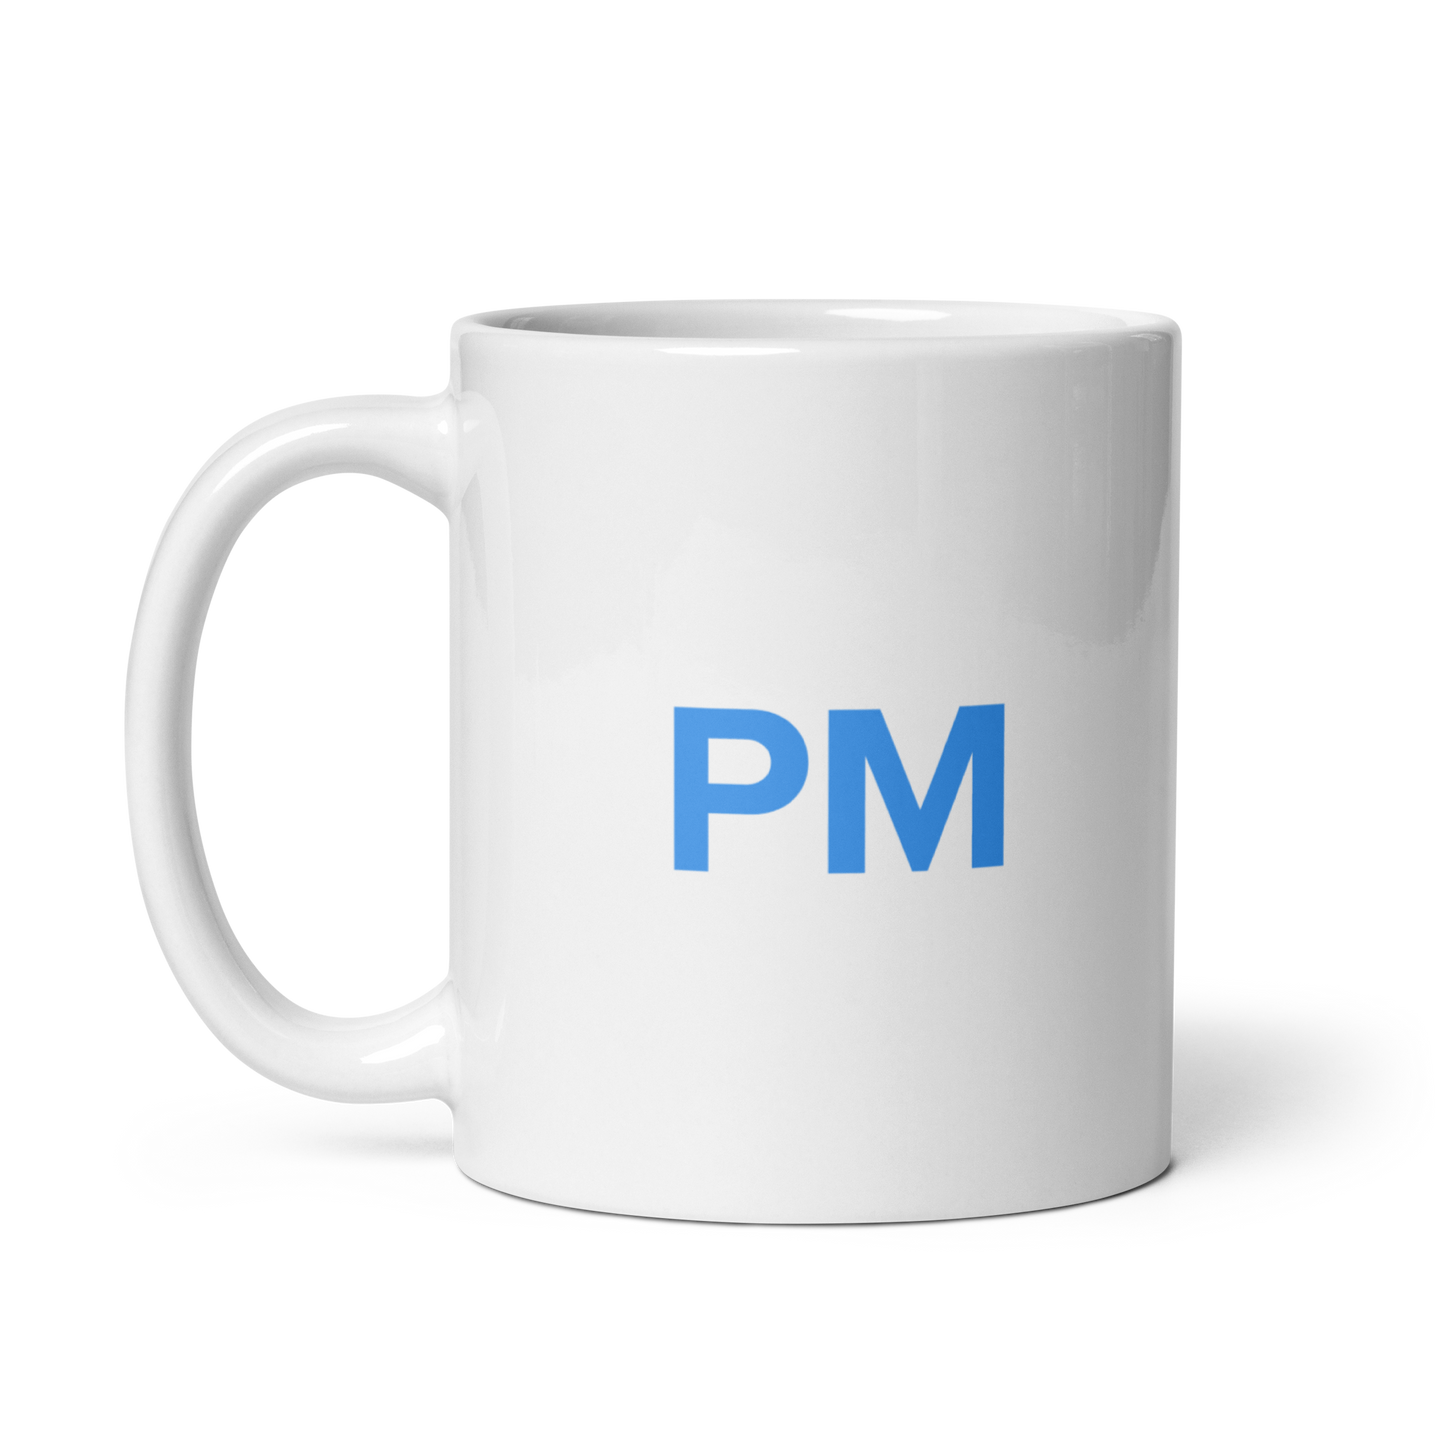 PM Mug